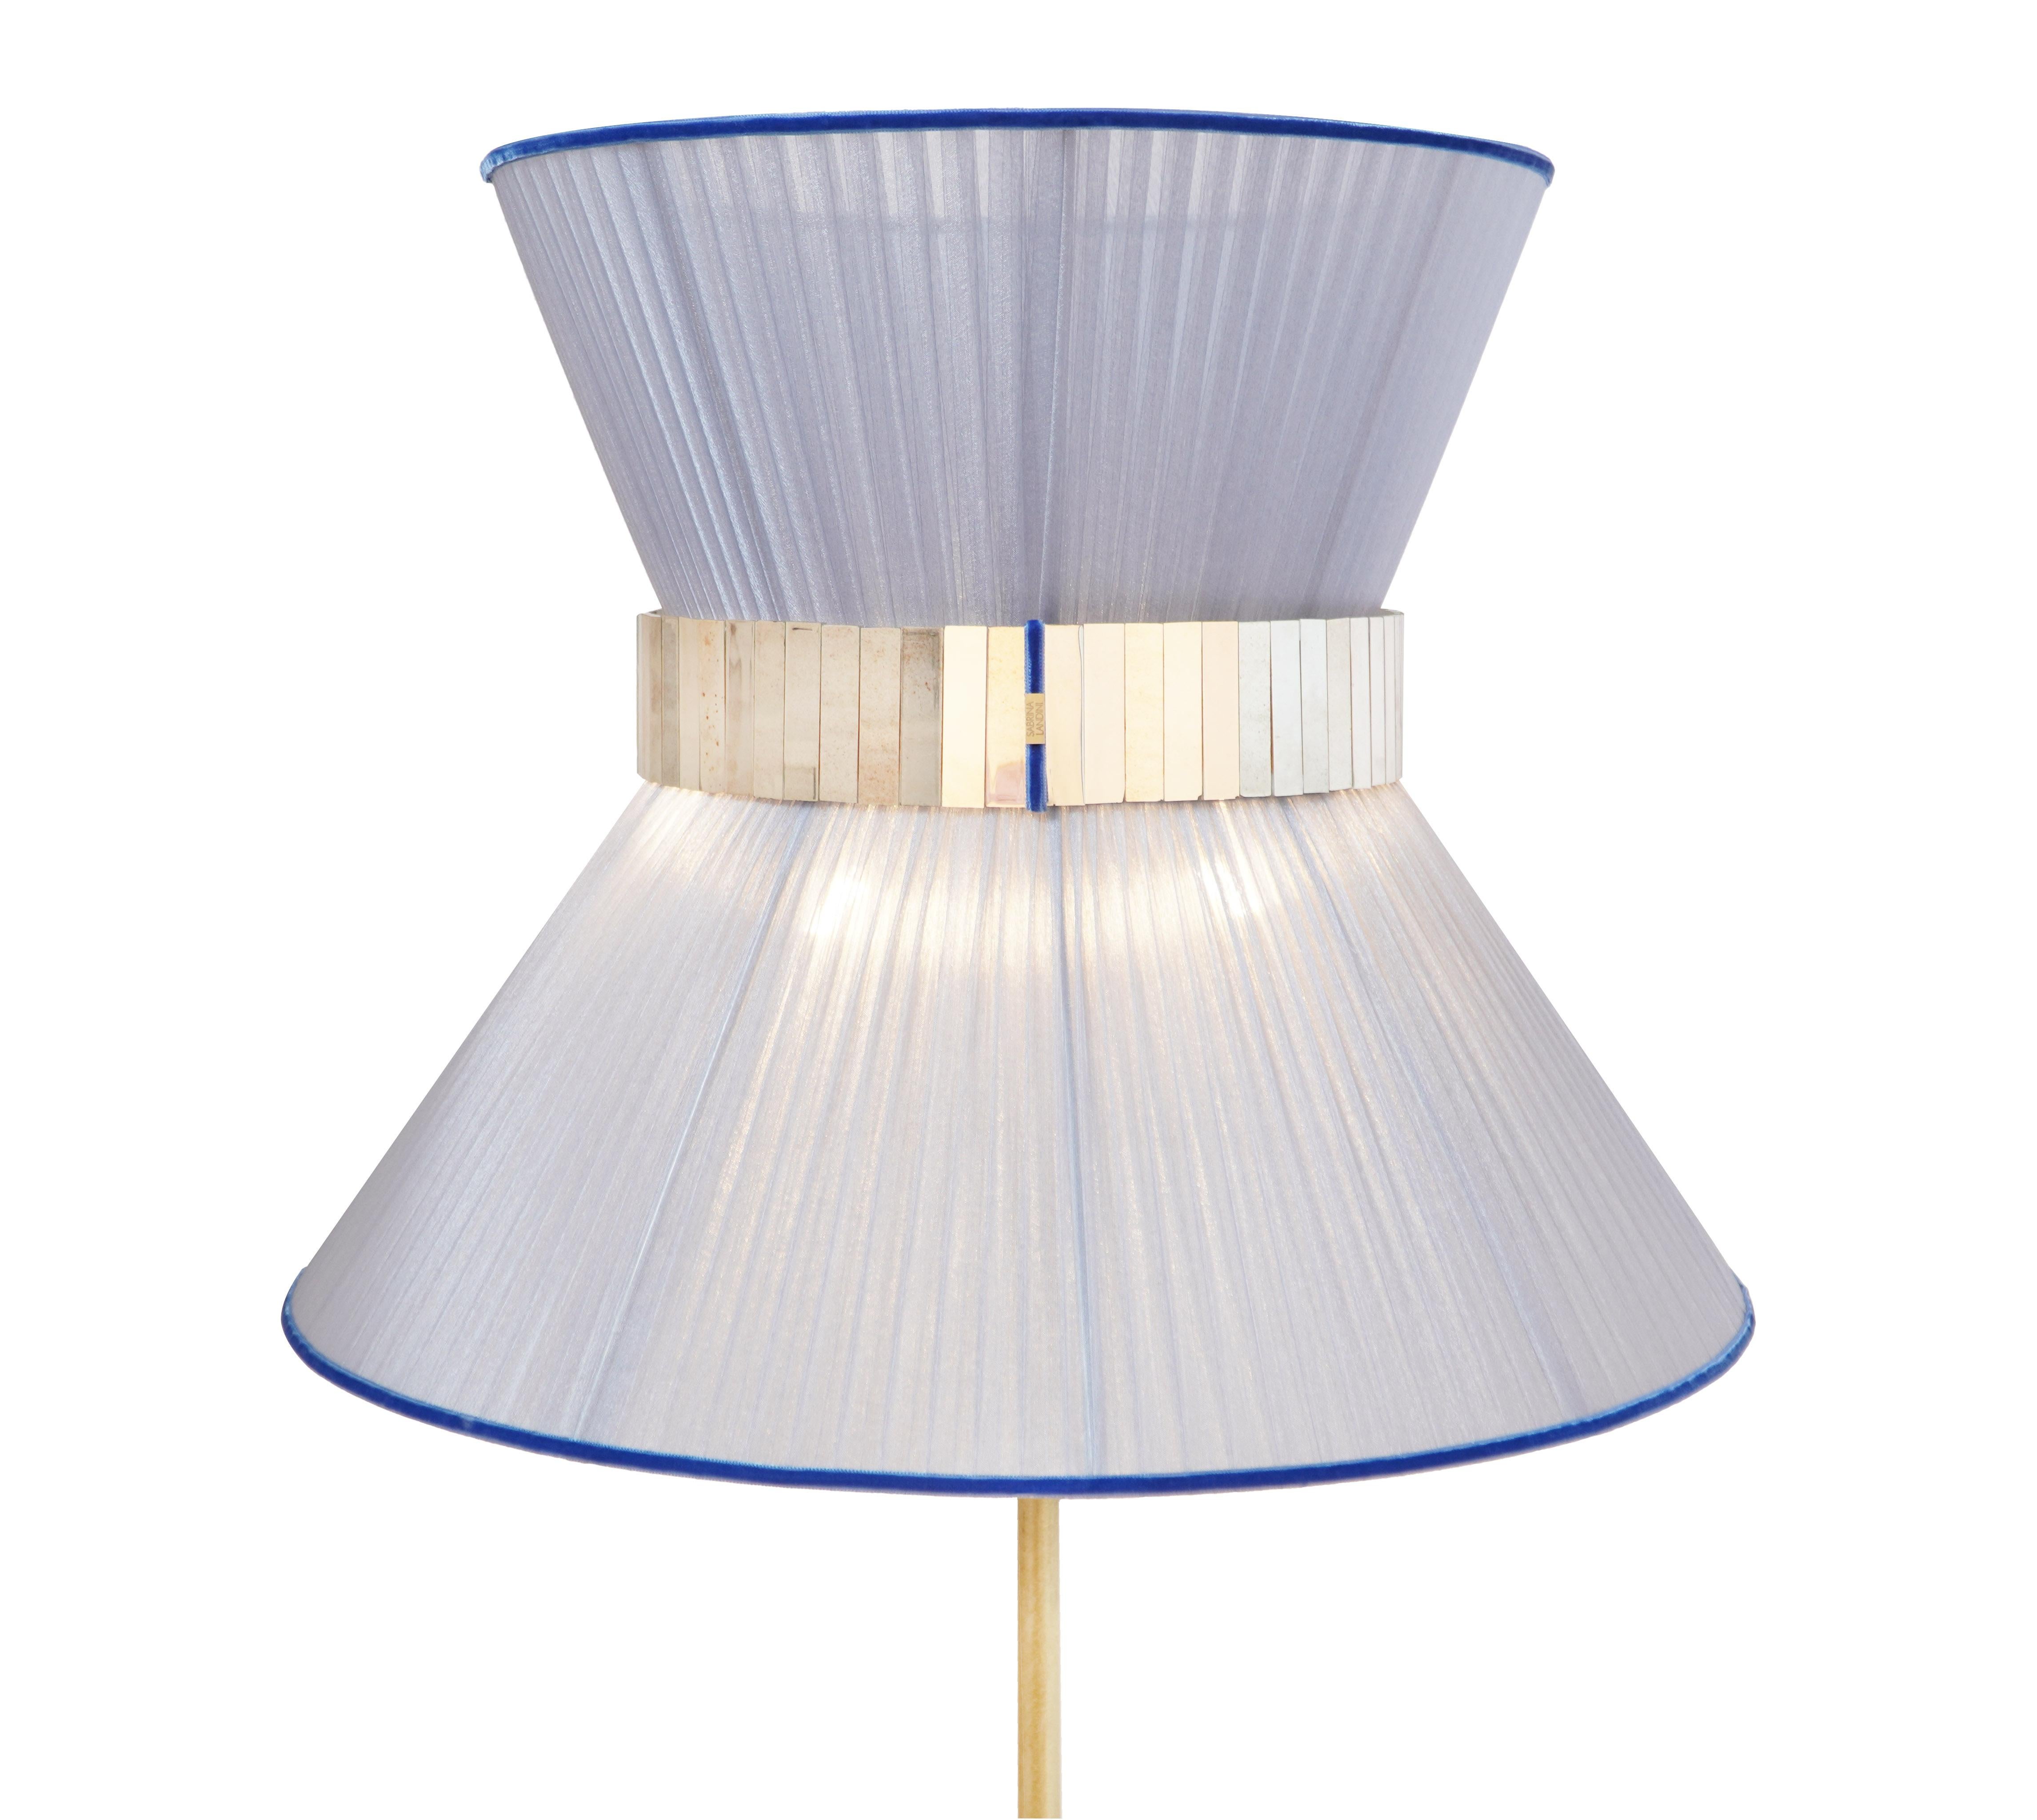 TIFFANY la lampe emblématique !

Voici l'époustouflante collection de lampes Tiffany de Sabrina.
Tiffany, lampe intemporelle, inspirée du film international 